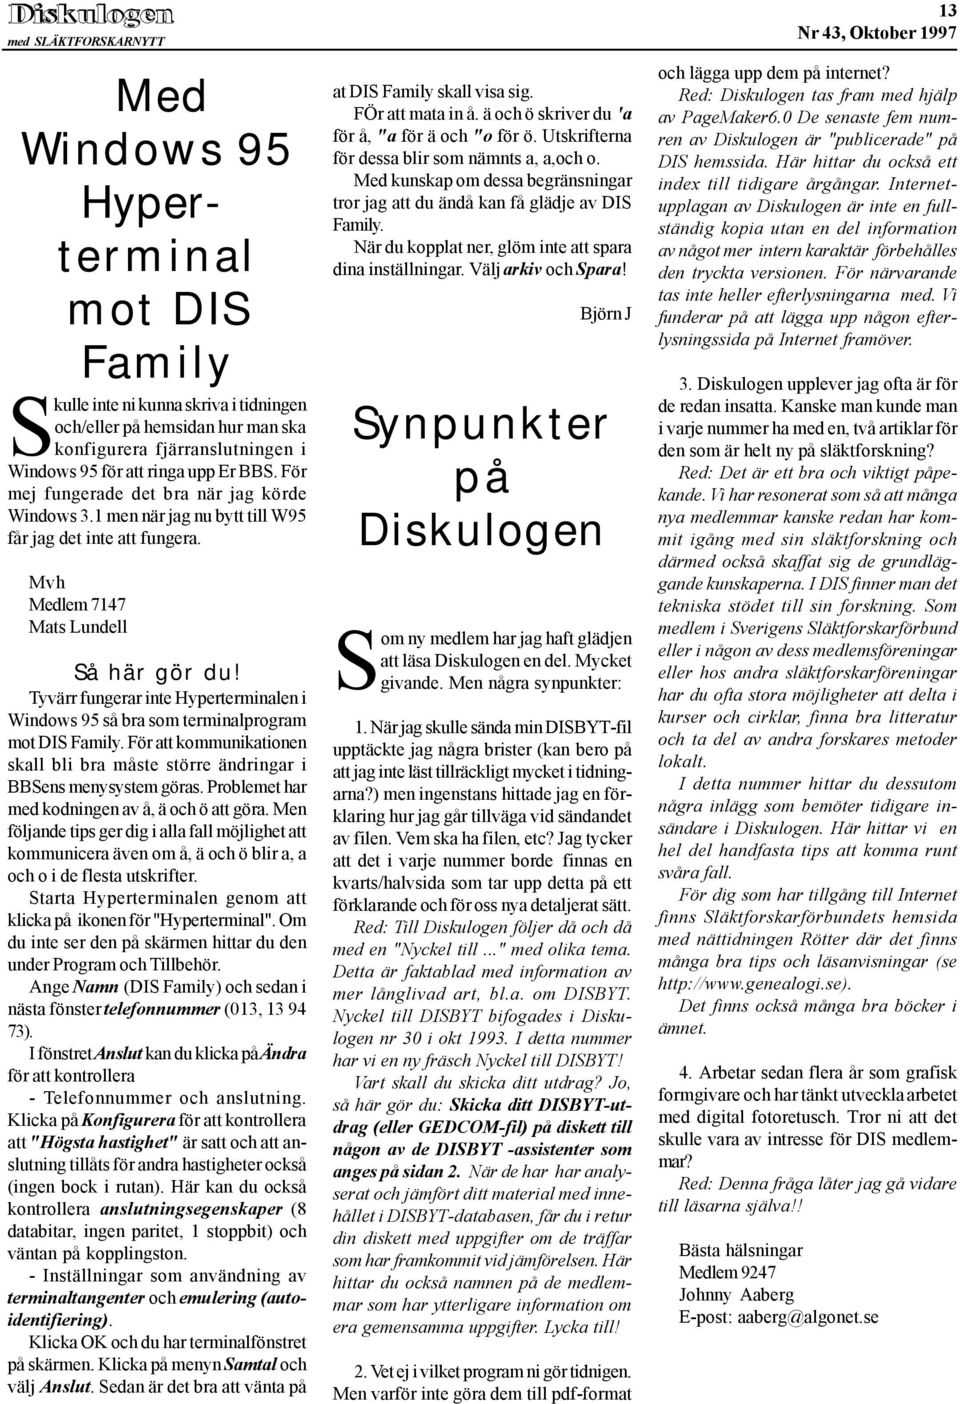 Tyvärr fungerar inte Hyperterminalen i Windows 95 så bra som terminalprogram mot DIS Family. För att kommunikationen skall bli bra måste större ändringar i BBSens menysystem göras.